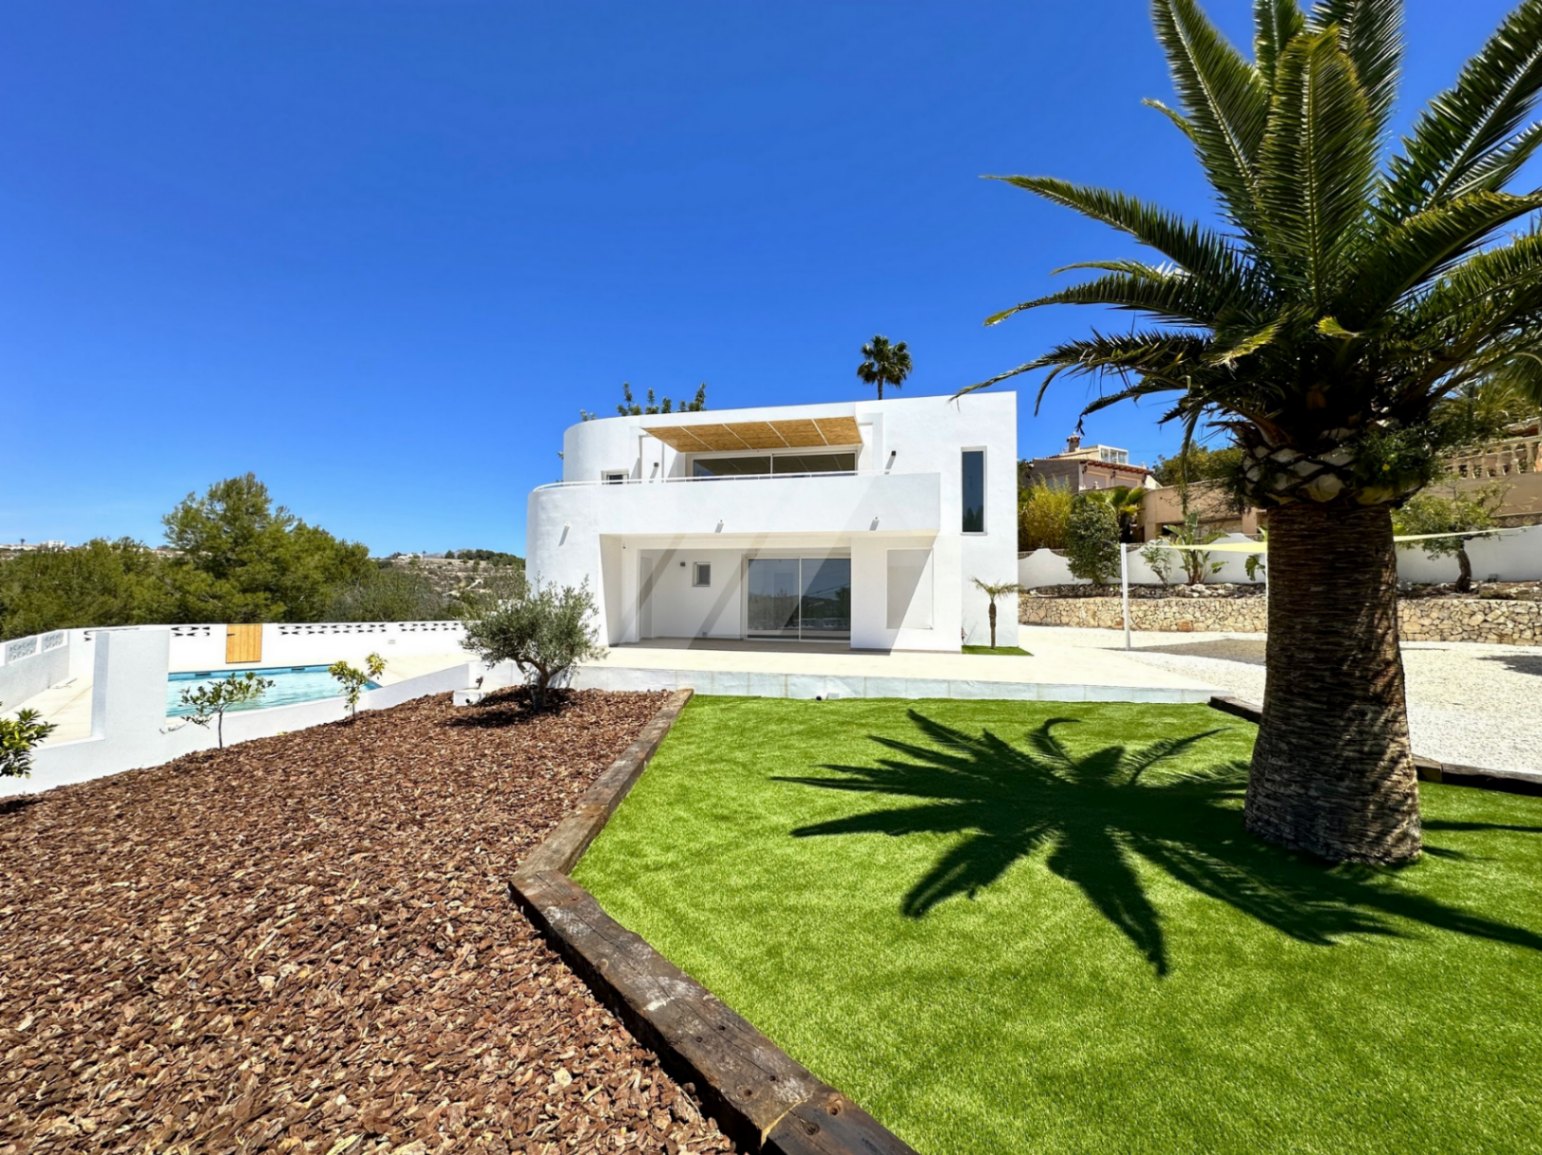 Villa in Ibicencan stijl te koop met uitzicht op zee, vlakbij Moraira.